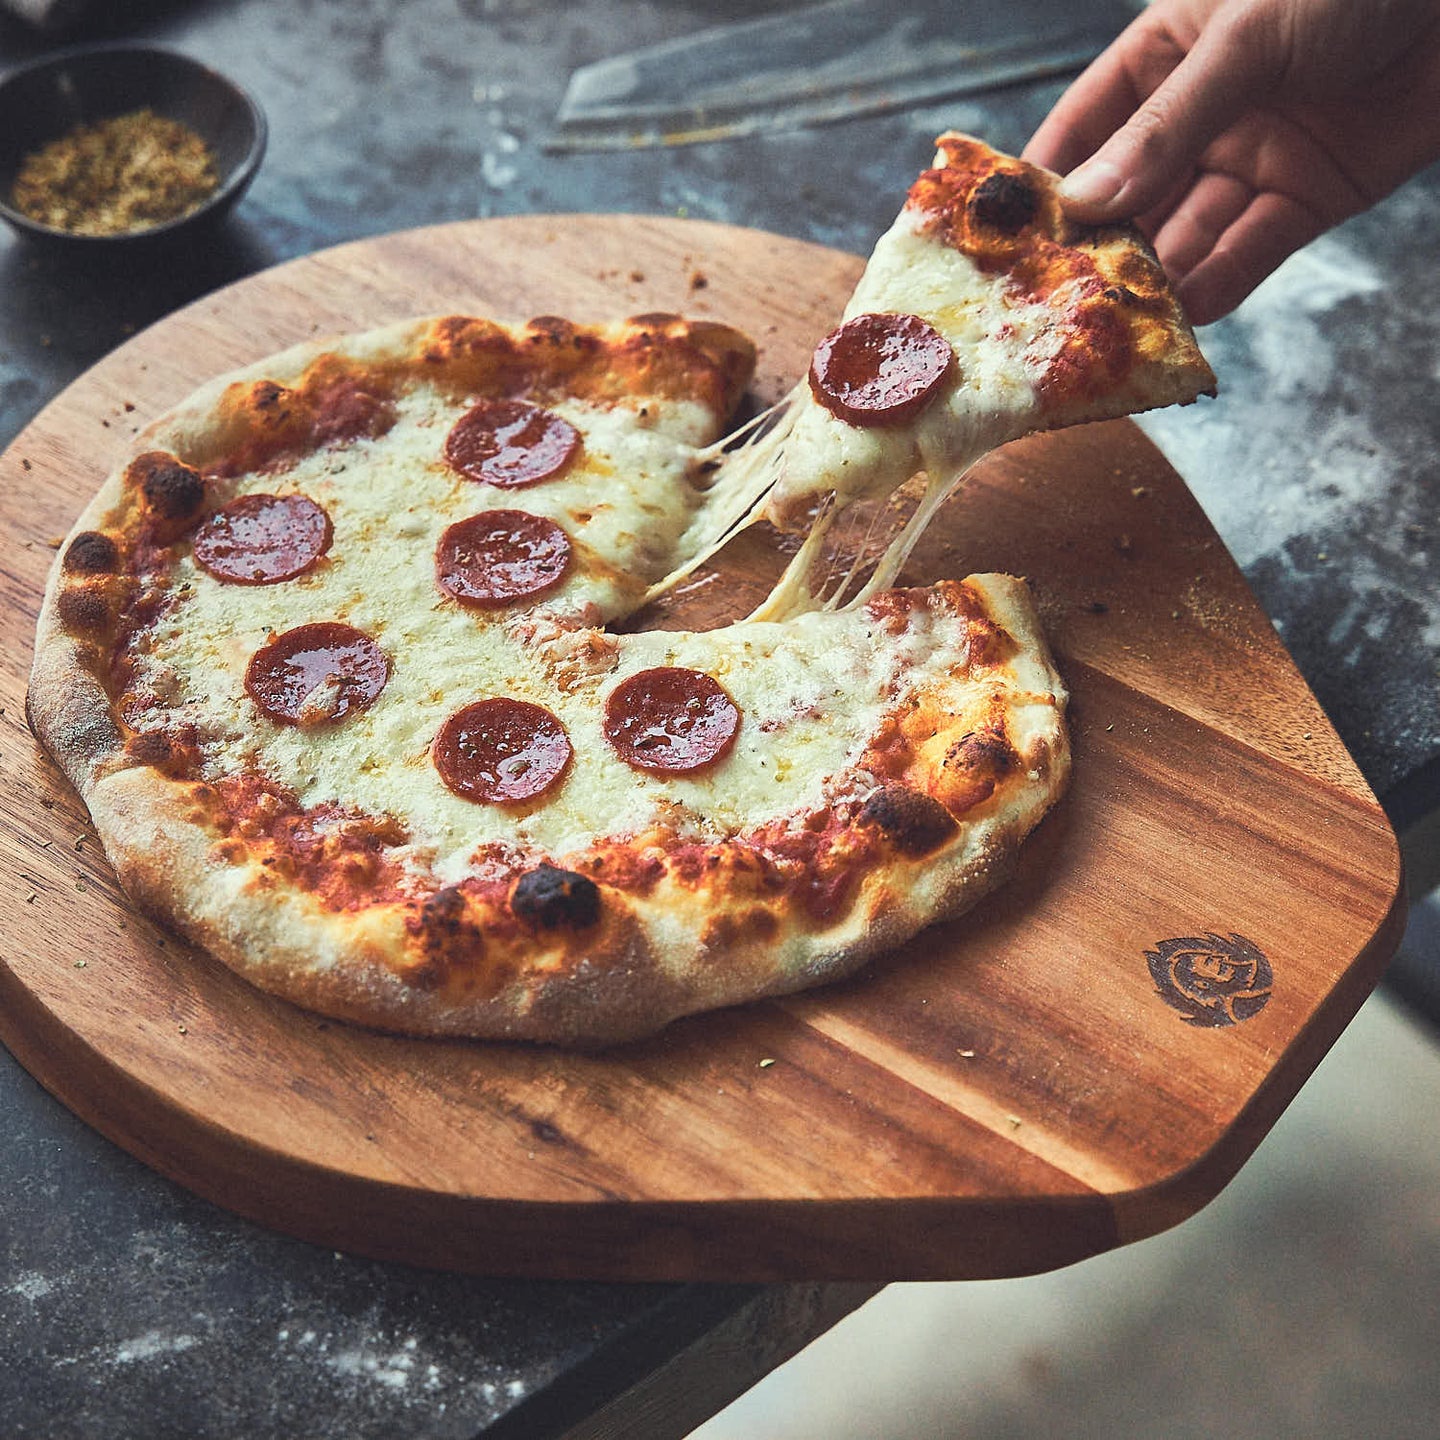 Tischszene Pizzastück mit Salami und geschmolzenem Käse wird von Pizzabrett genommen